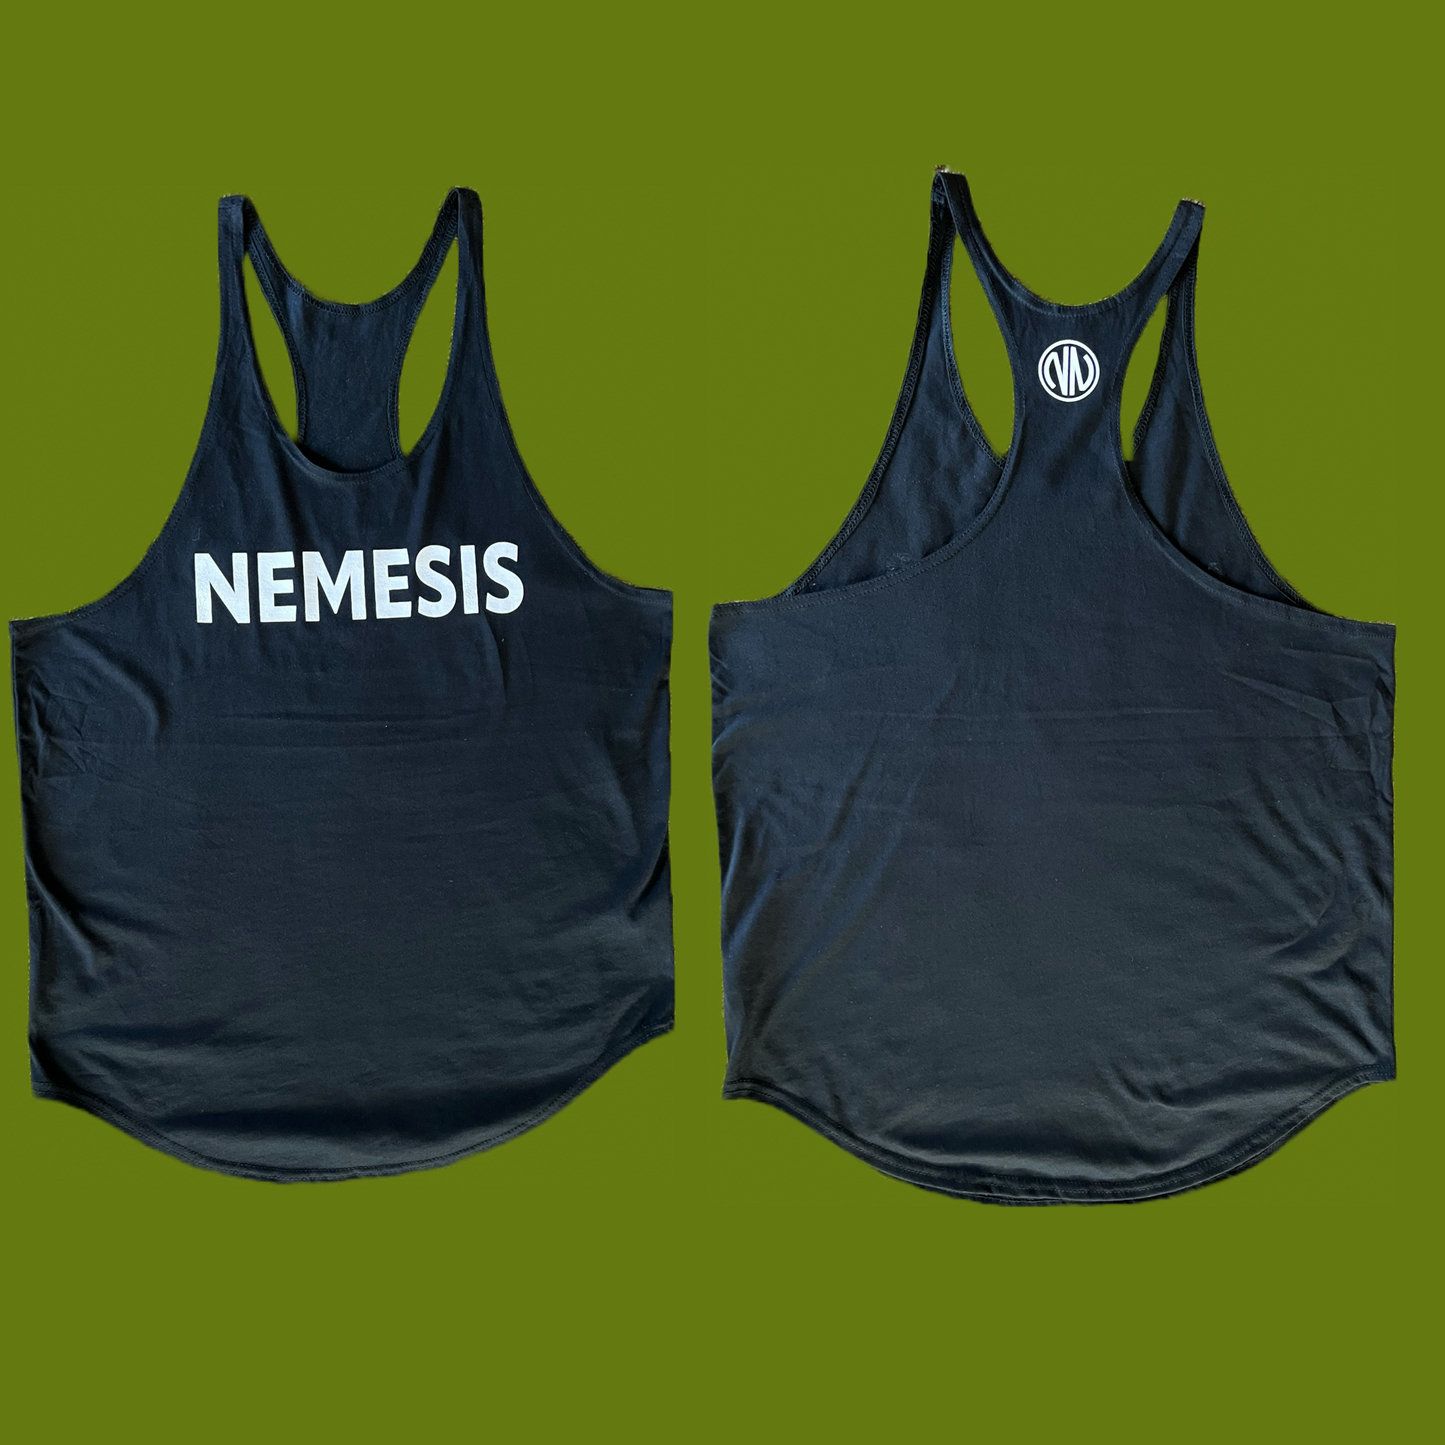 Nemesis Stringer tanks